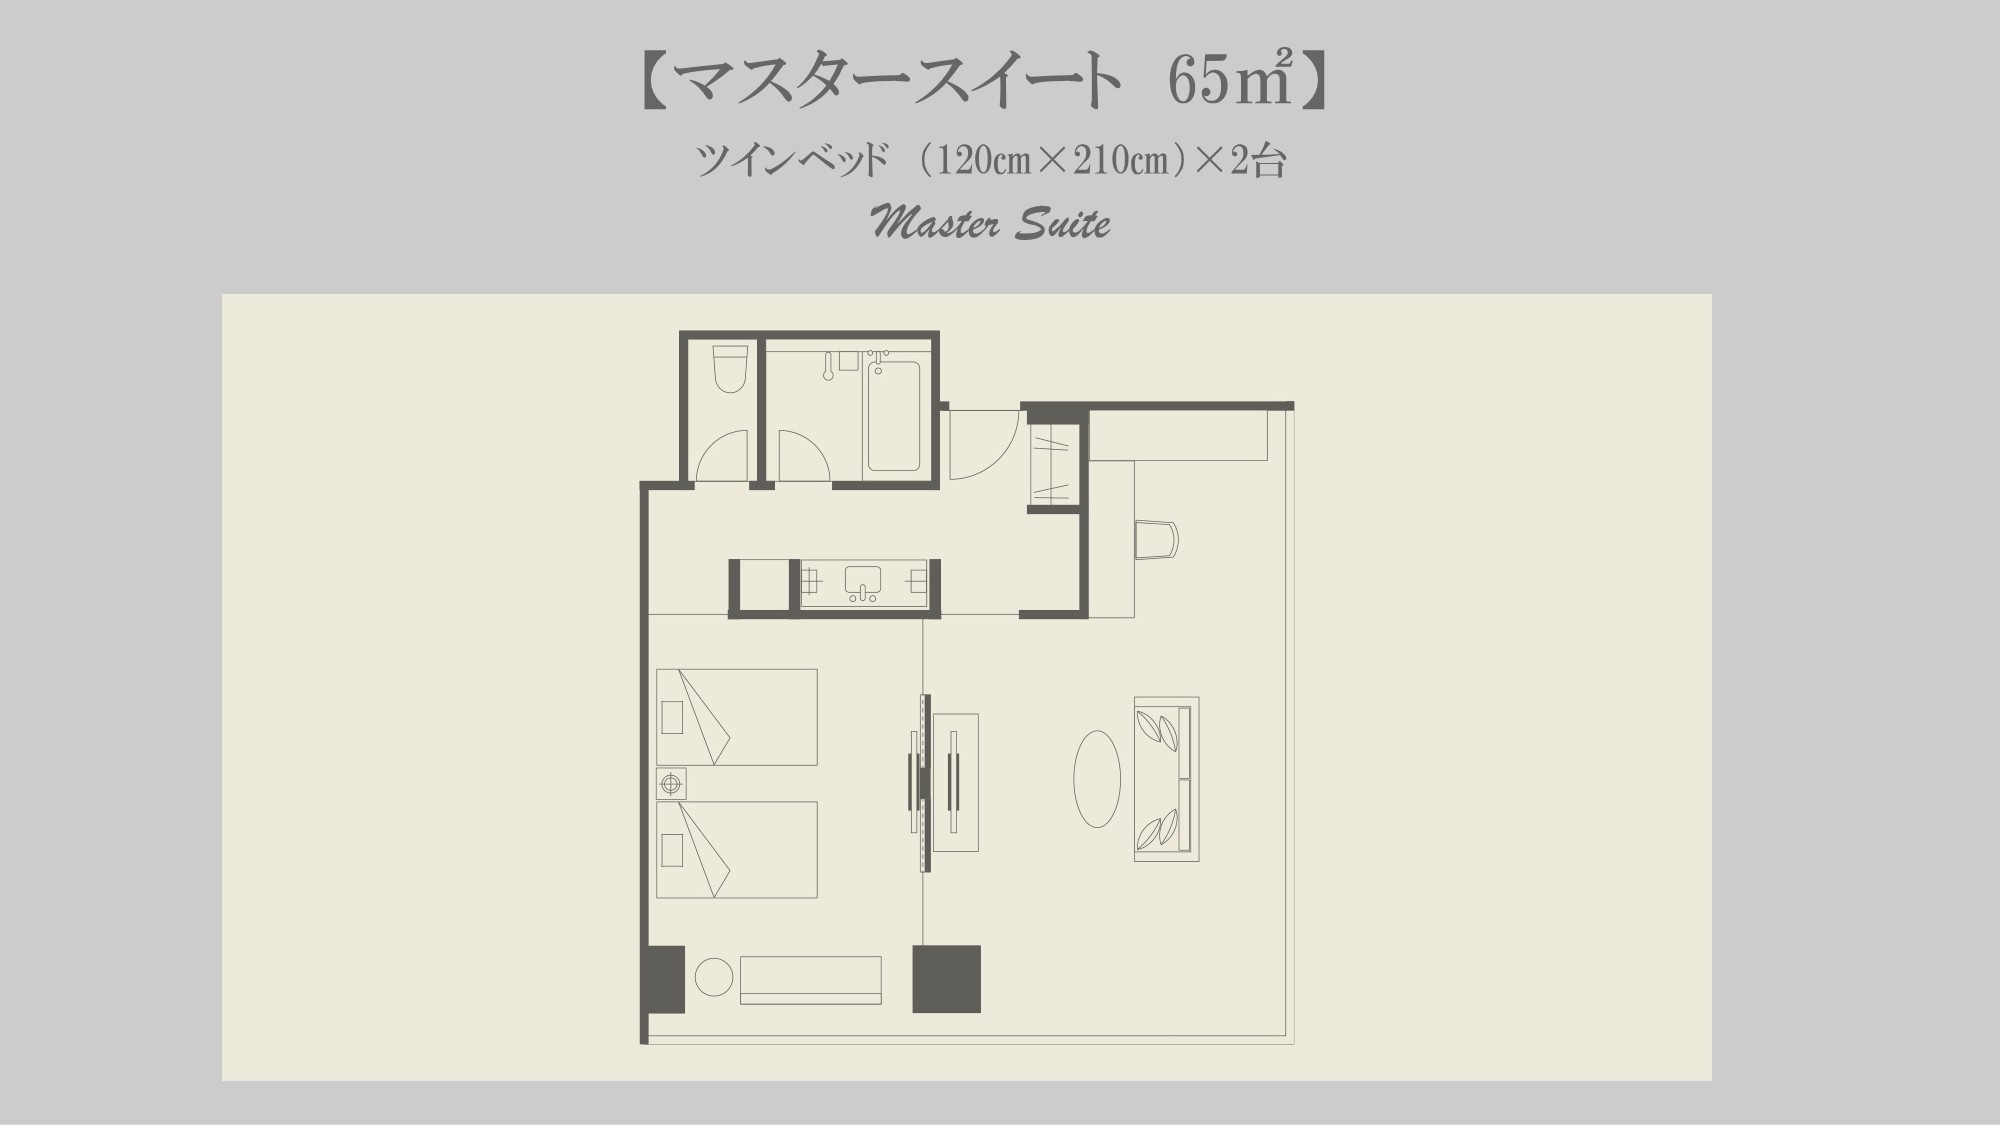 Master Suite Twin｜65-67平米｜セミダブルベッド2台幅120×;210センチ